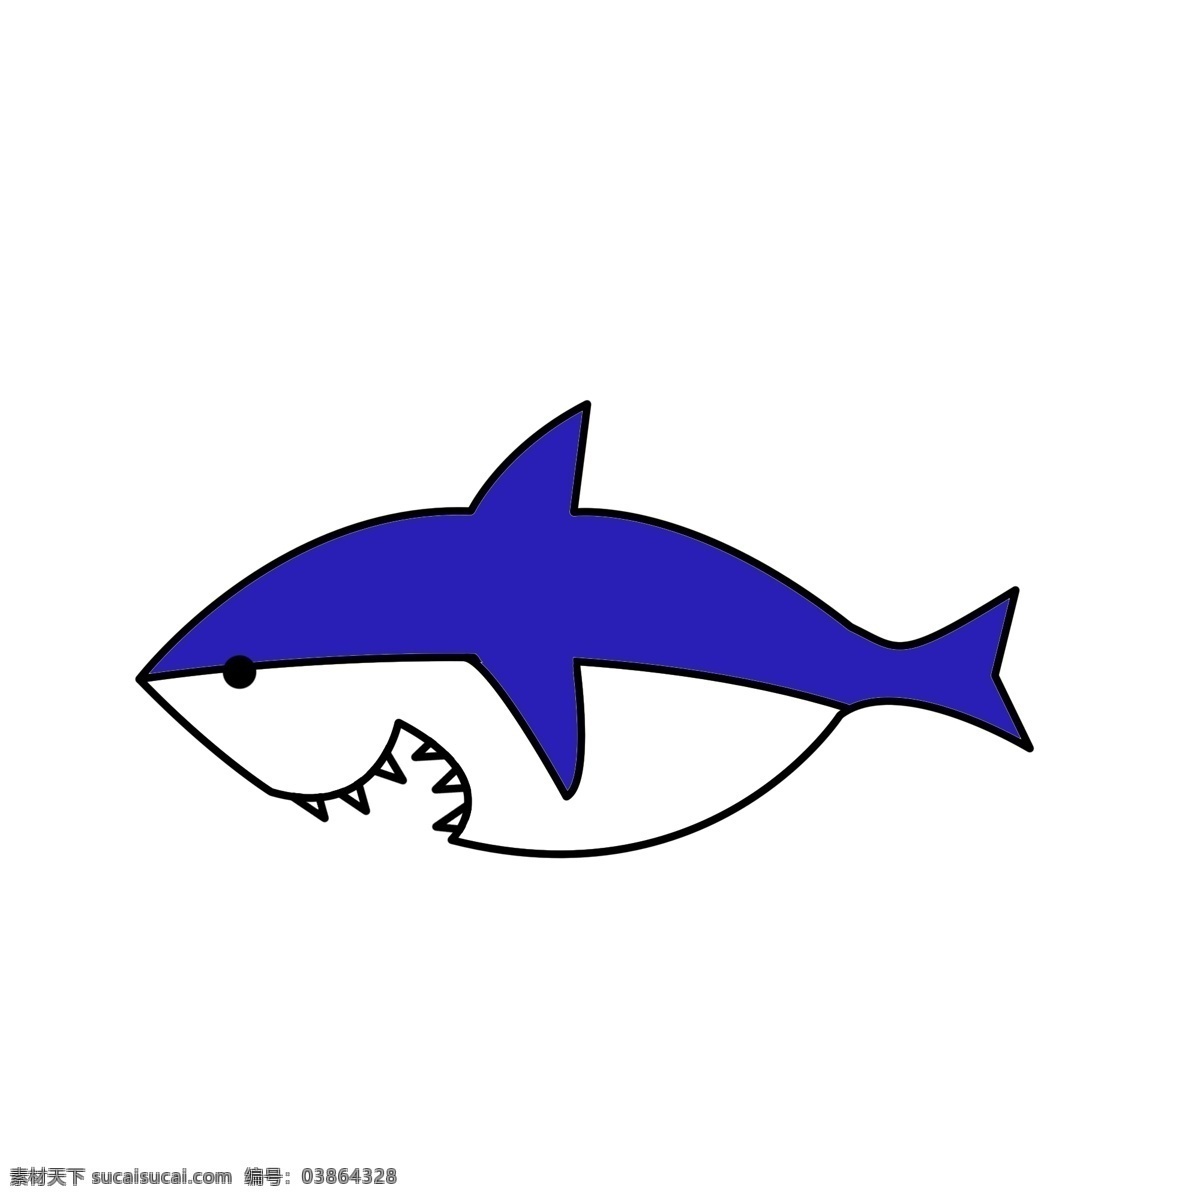 可爱 卡通 创意 简约 手绘 鲨鱼 海底 元素